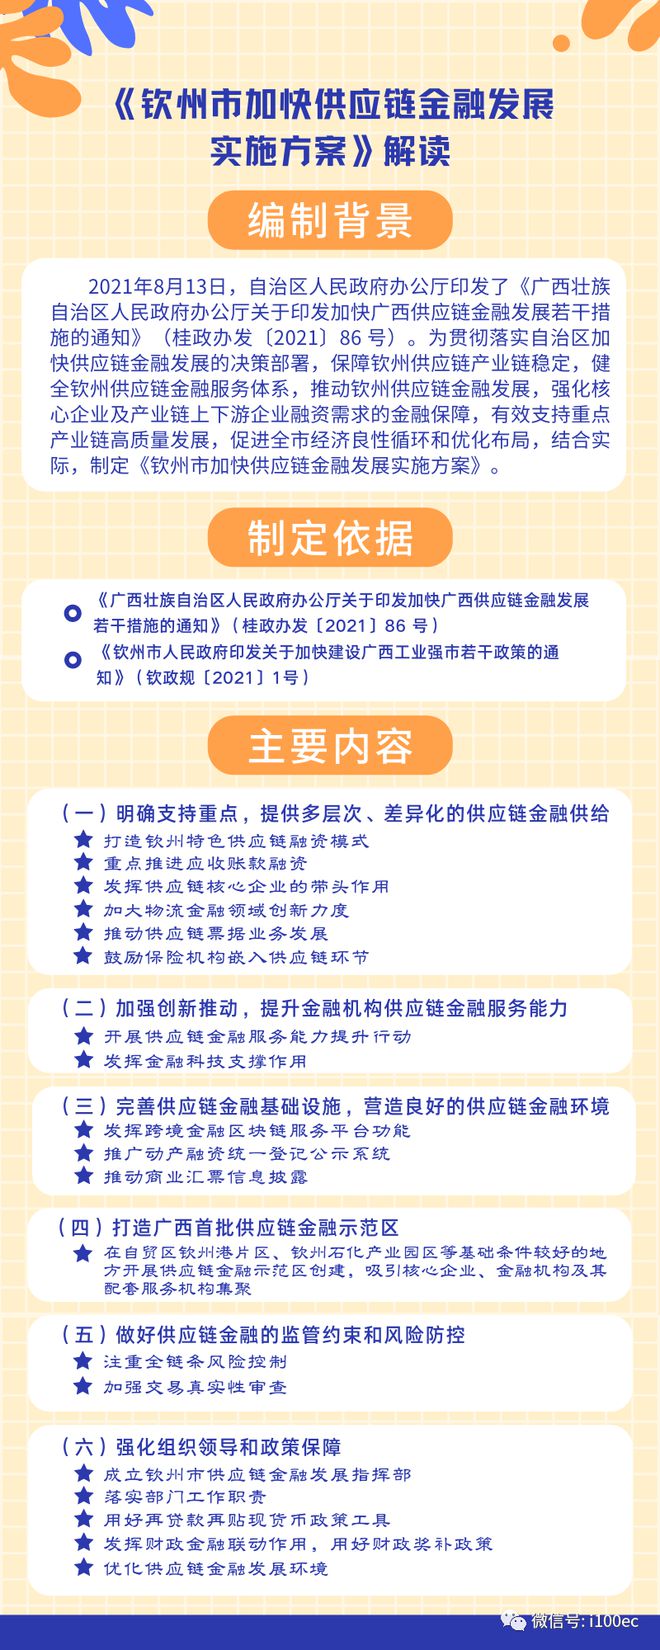 bat365中文官方网站广西钦州加快供应链金融发展 6个方面19项举措打造供应链(图2)